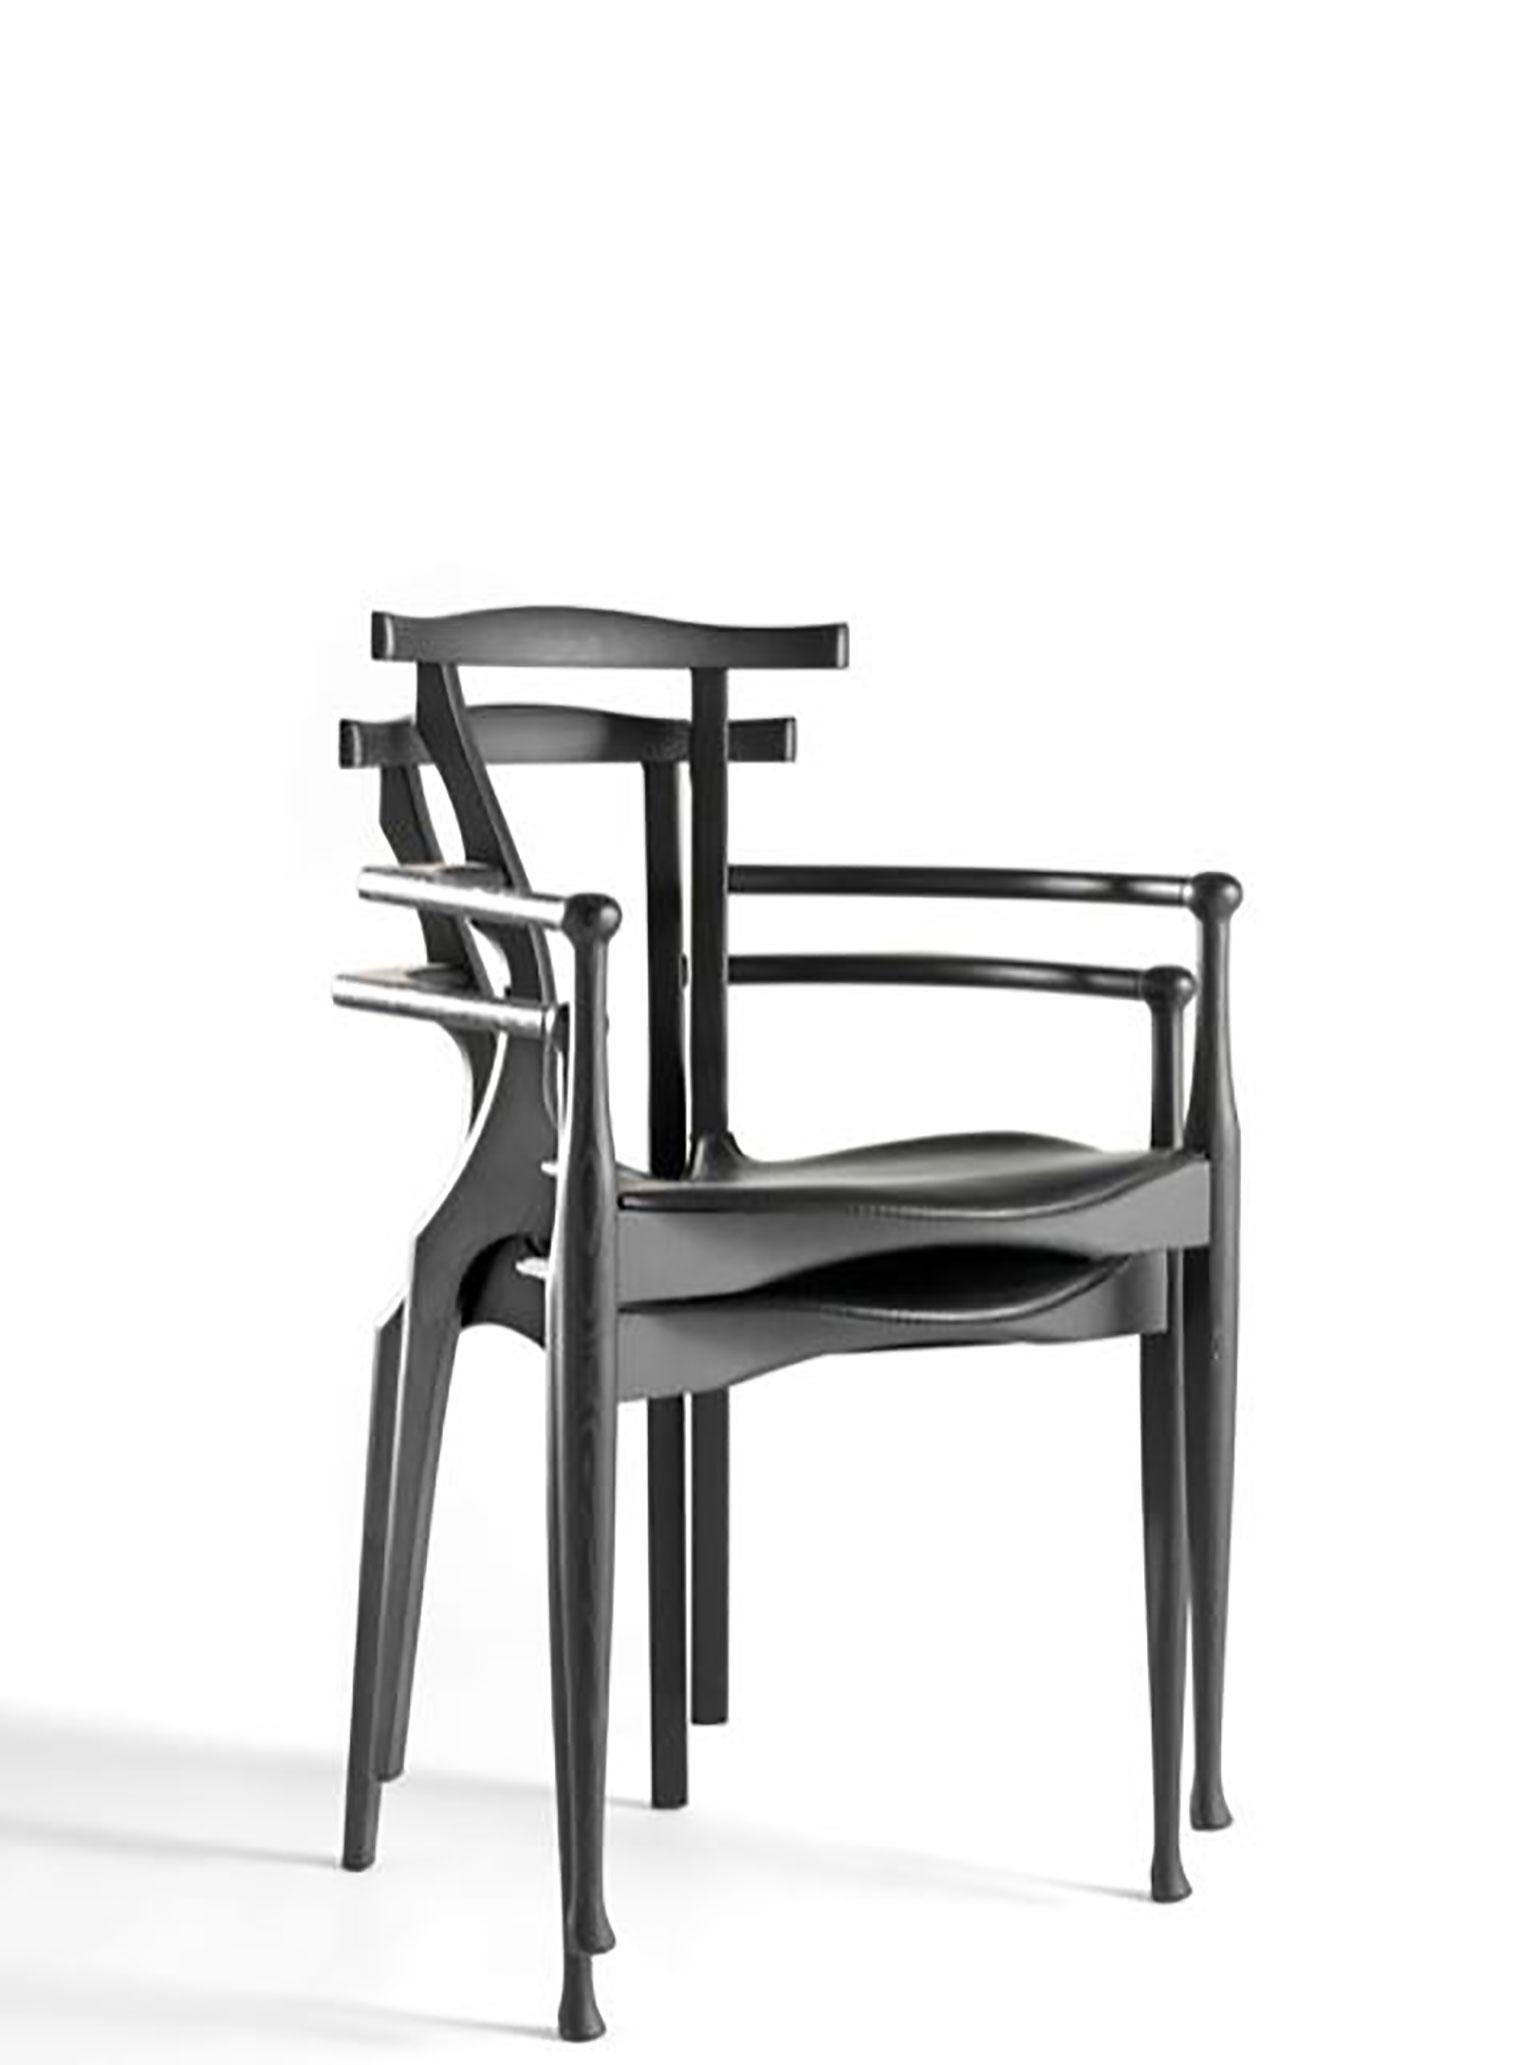 Gaulino-Stuhl, entworfen von Oscar Tusquets Blanca für BD Barcelona. Dies ist eines der großartigen Designs von Oscar Tusquets. Der Stuhl ist aus Holz und Leder gefertigt und hat sich zu einer Figur des spanischen Designs entwickelt. Der Name stammt